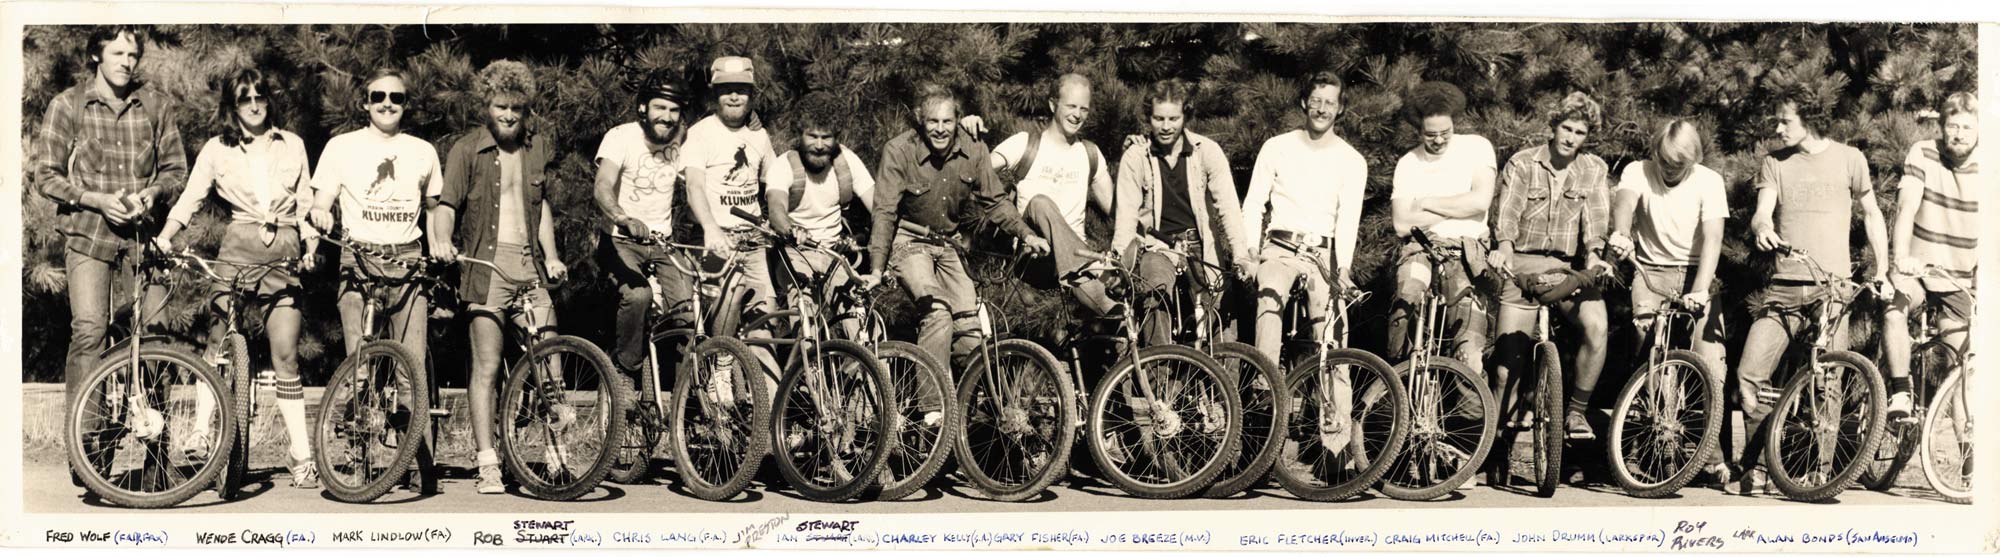 Photo of the original repack crew with signatures